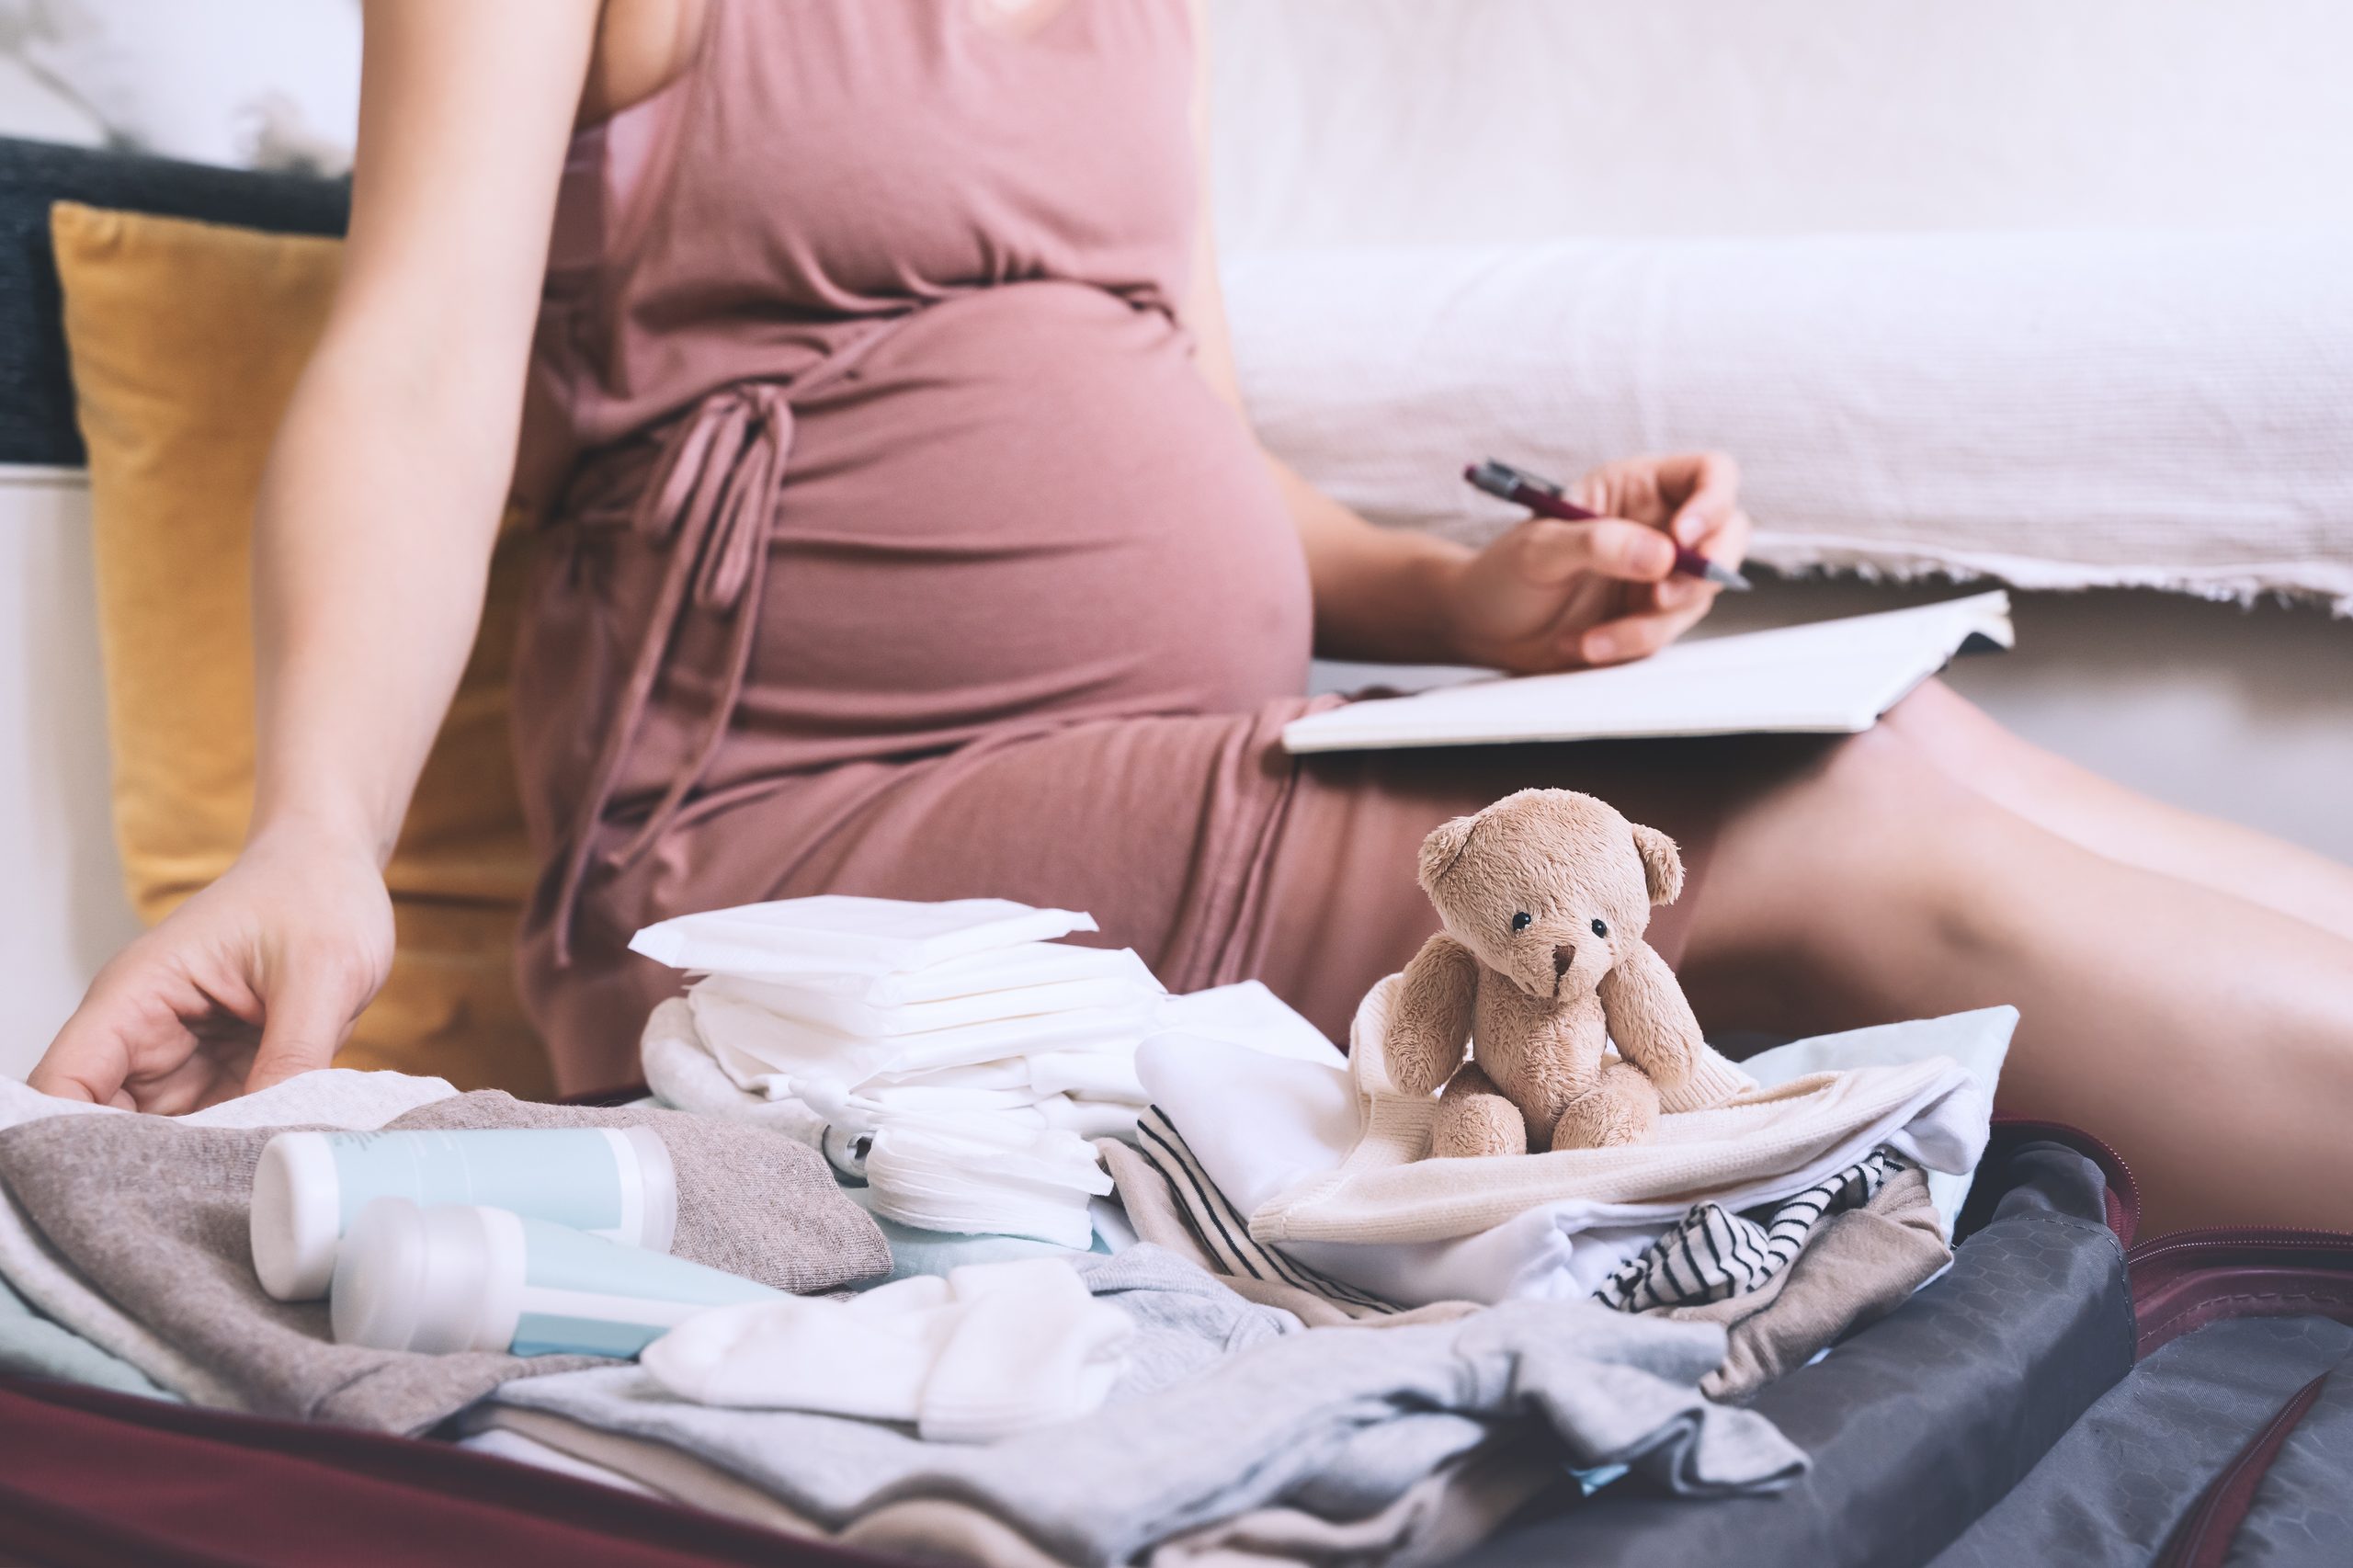 Deine erste Schwangerschaft? Wie wäre es mit einer Schwangerschaftscheckliste, damit du bestens vorbereitet bist, wenn dein Nachwuchs endlich kommt!